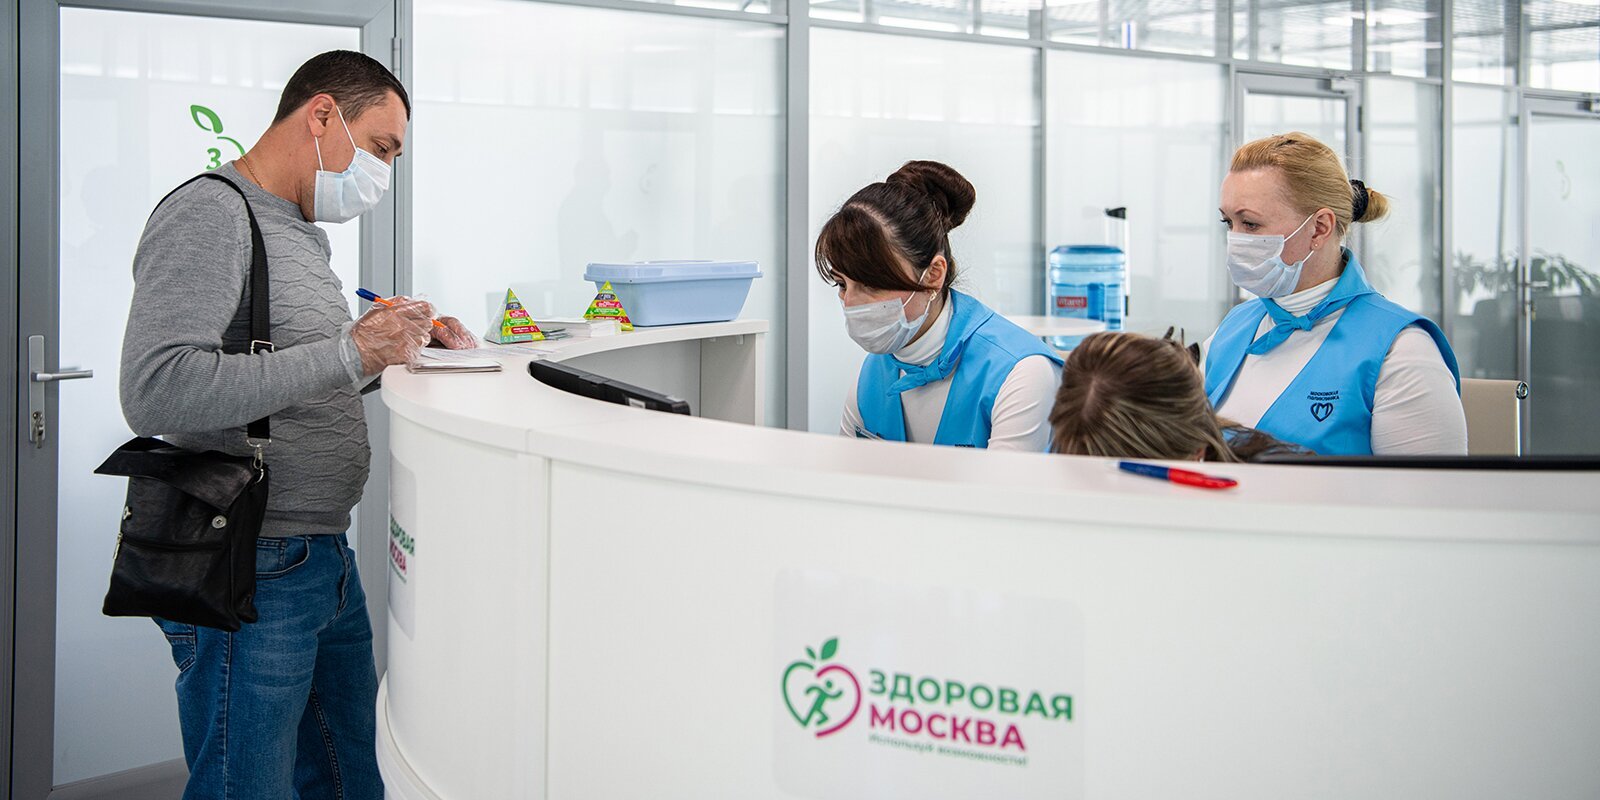 Порядка 20 тысяч человек вакцинировались от коронавируса в павильонах «Здоровая Москва»